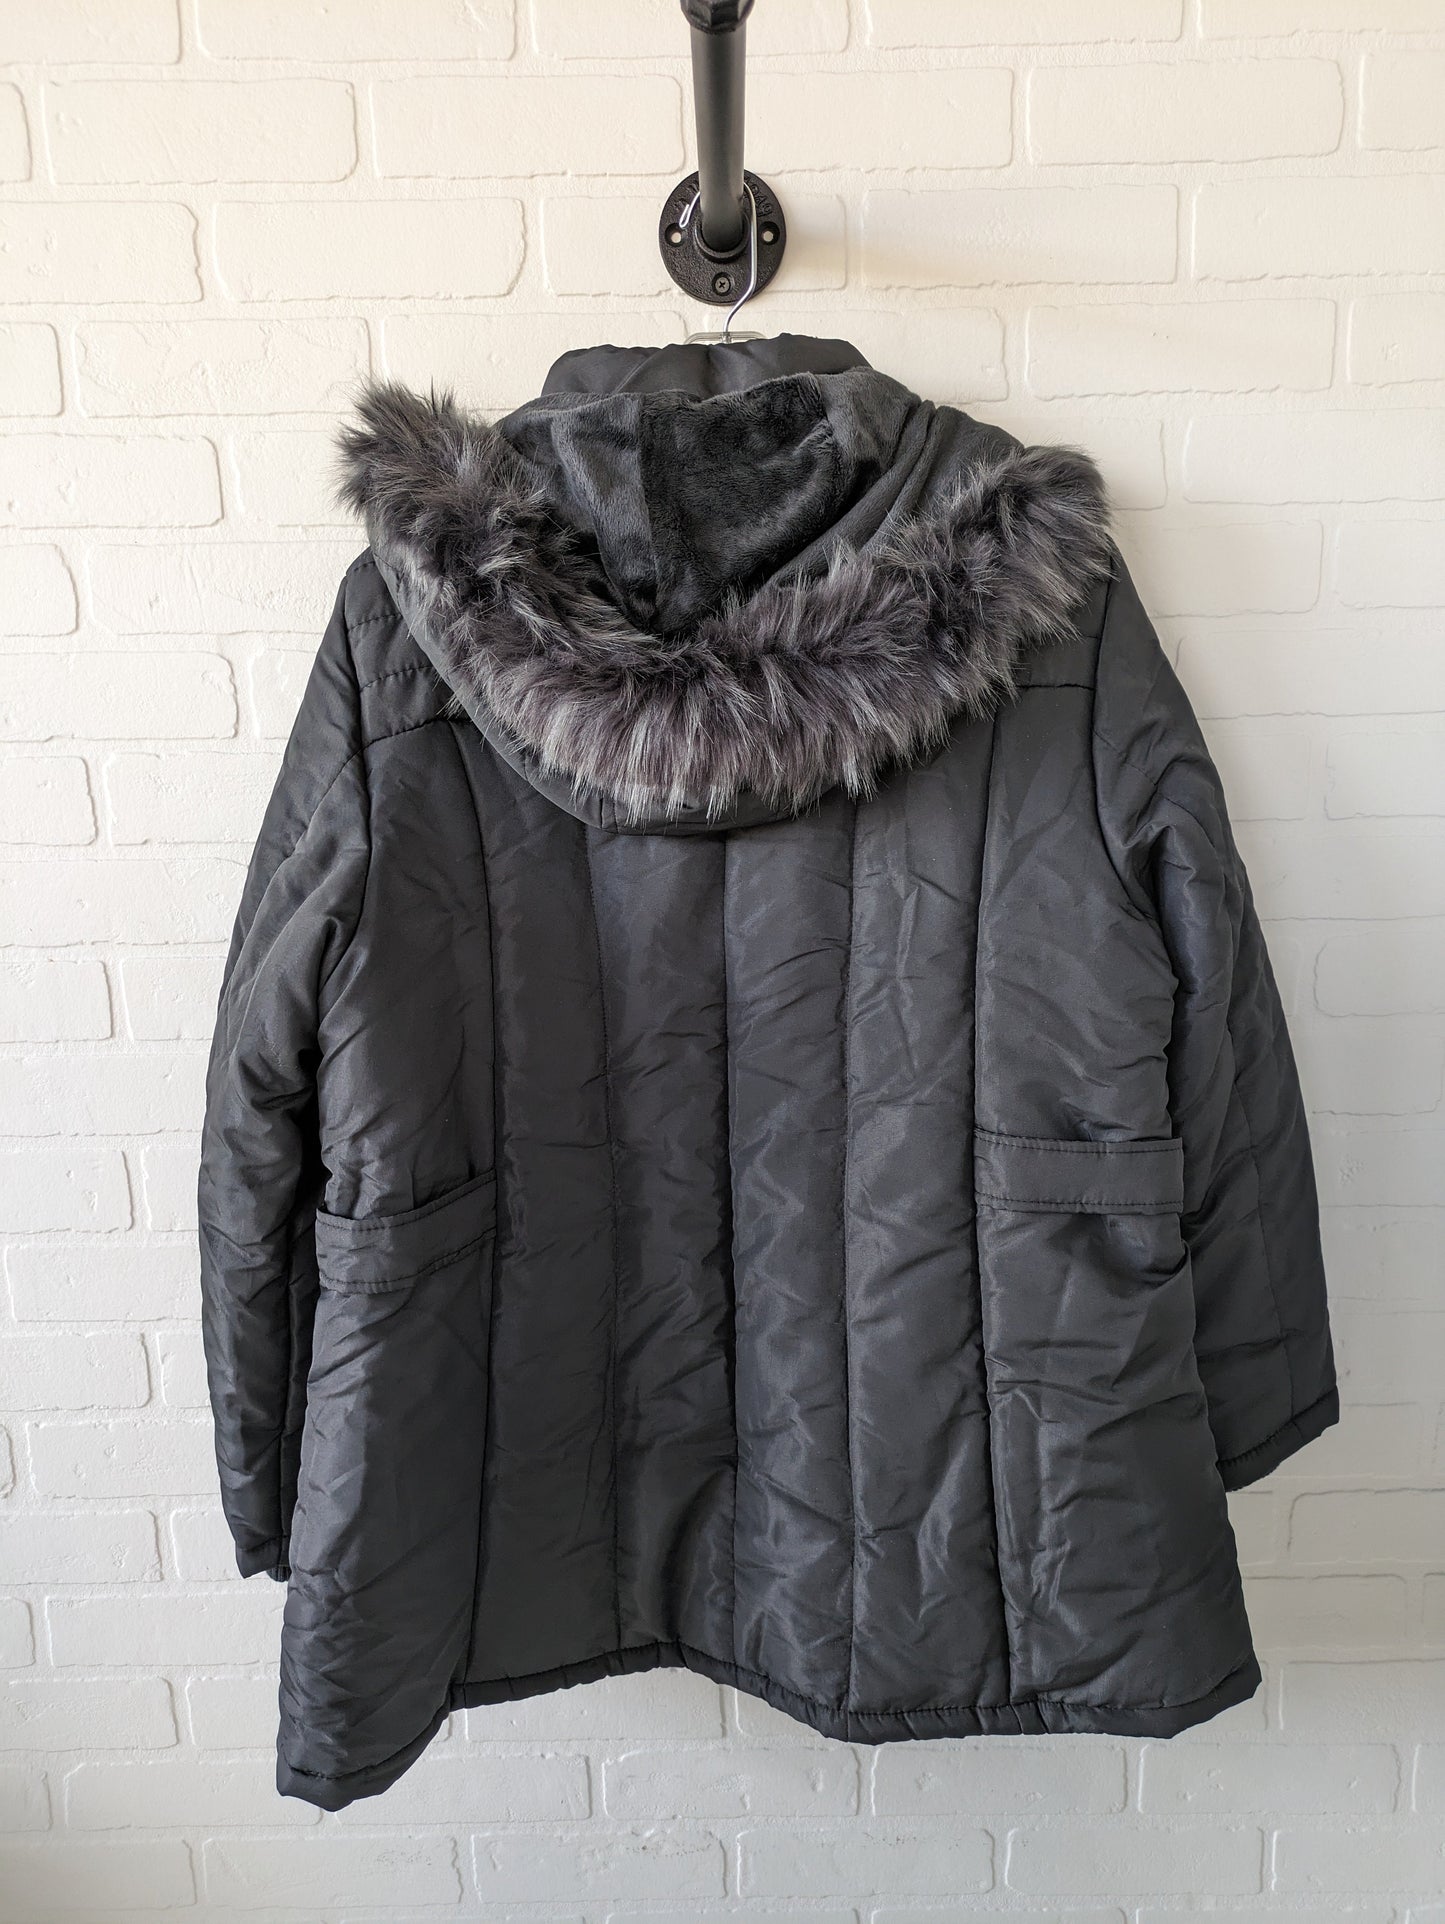 Coat Parka By Liz Claiborne  Size: 2x